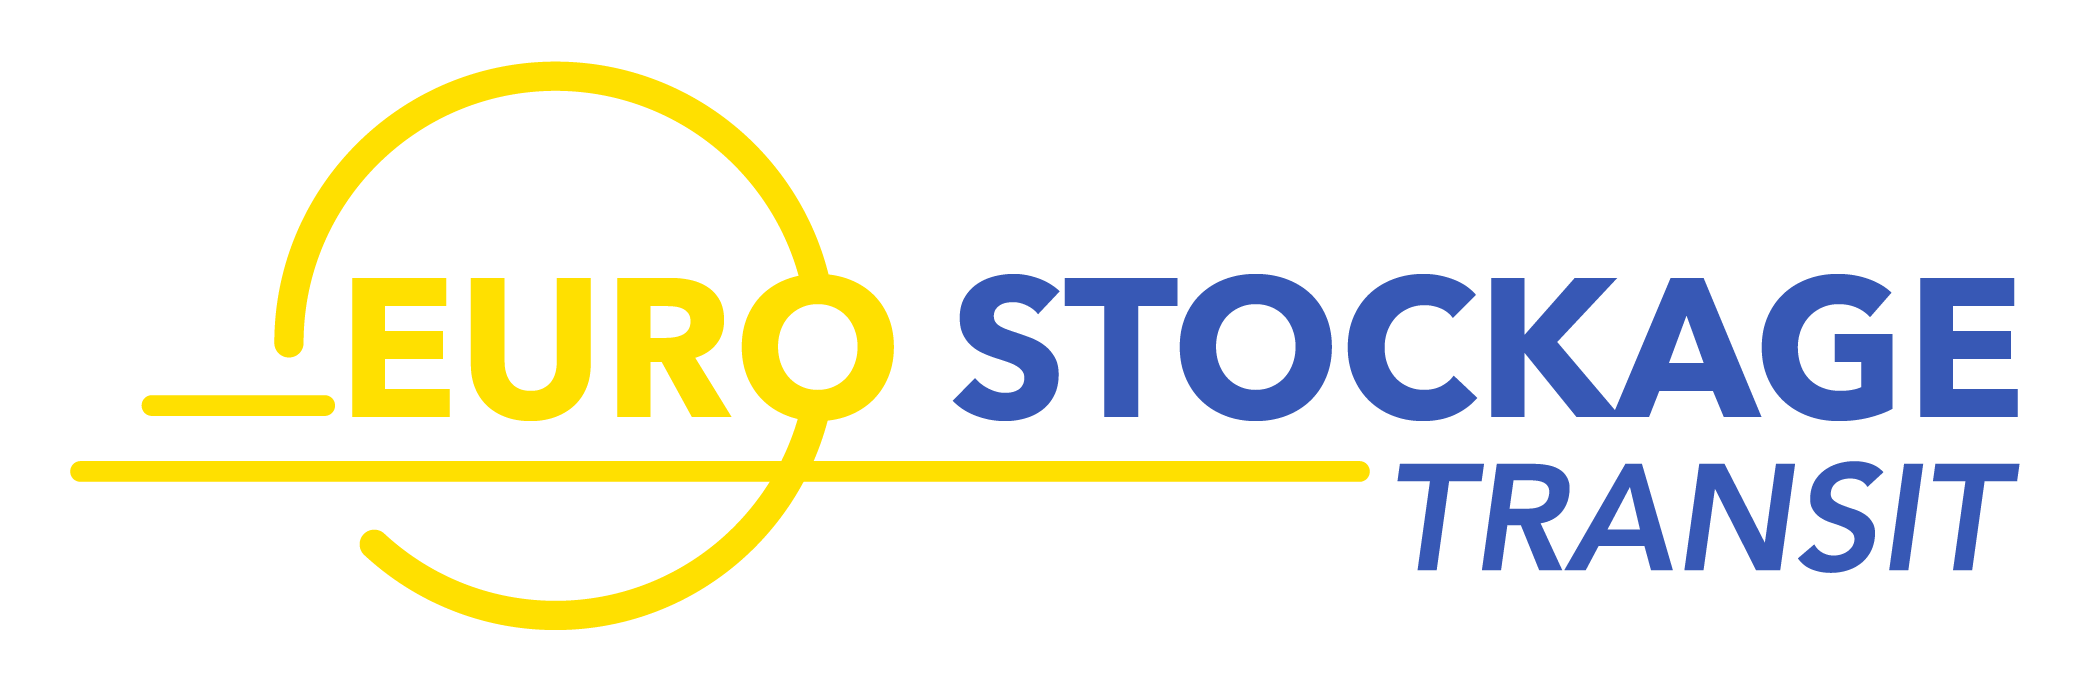 Logo-Eurostockage-Transit7